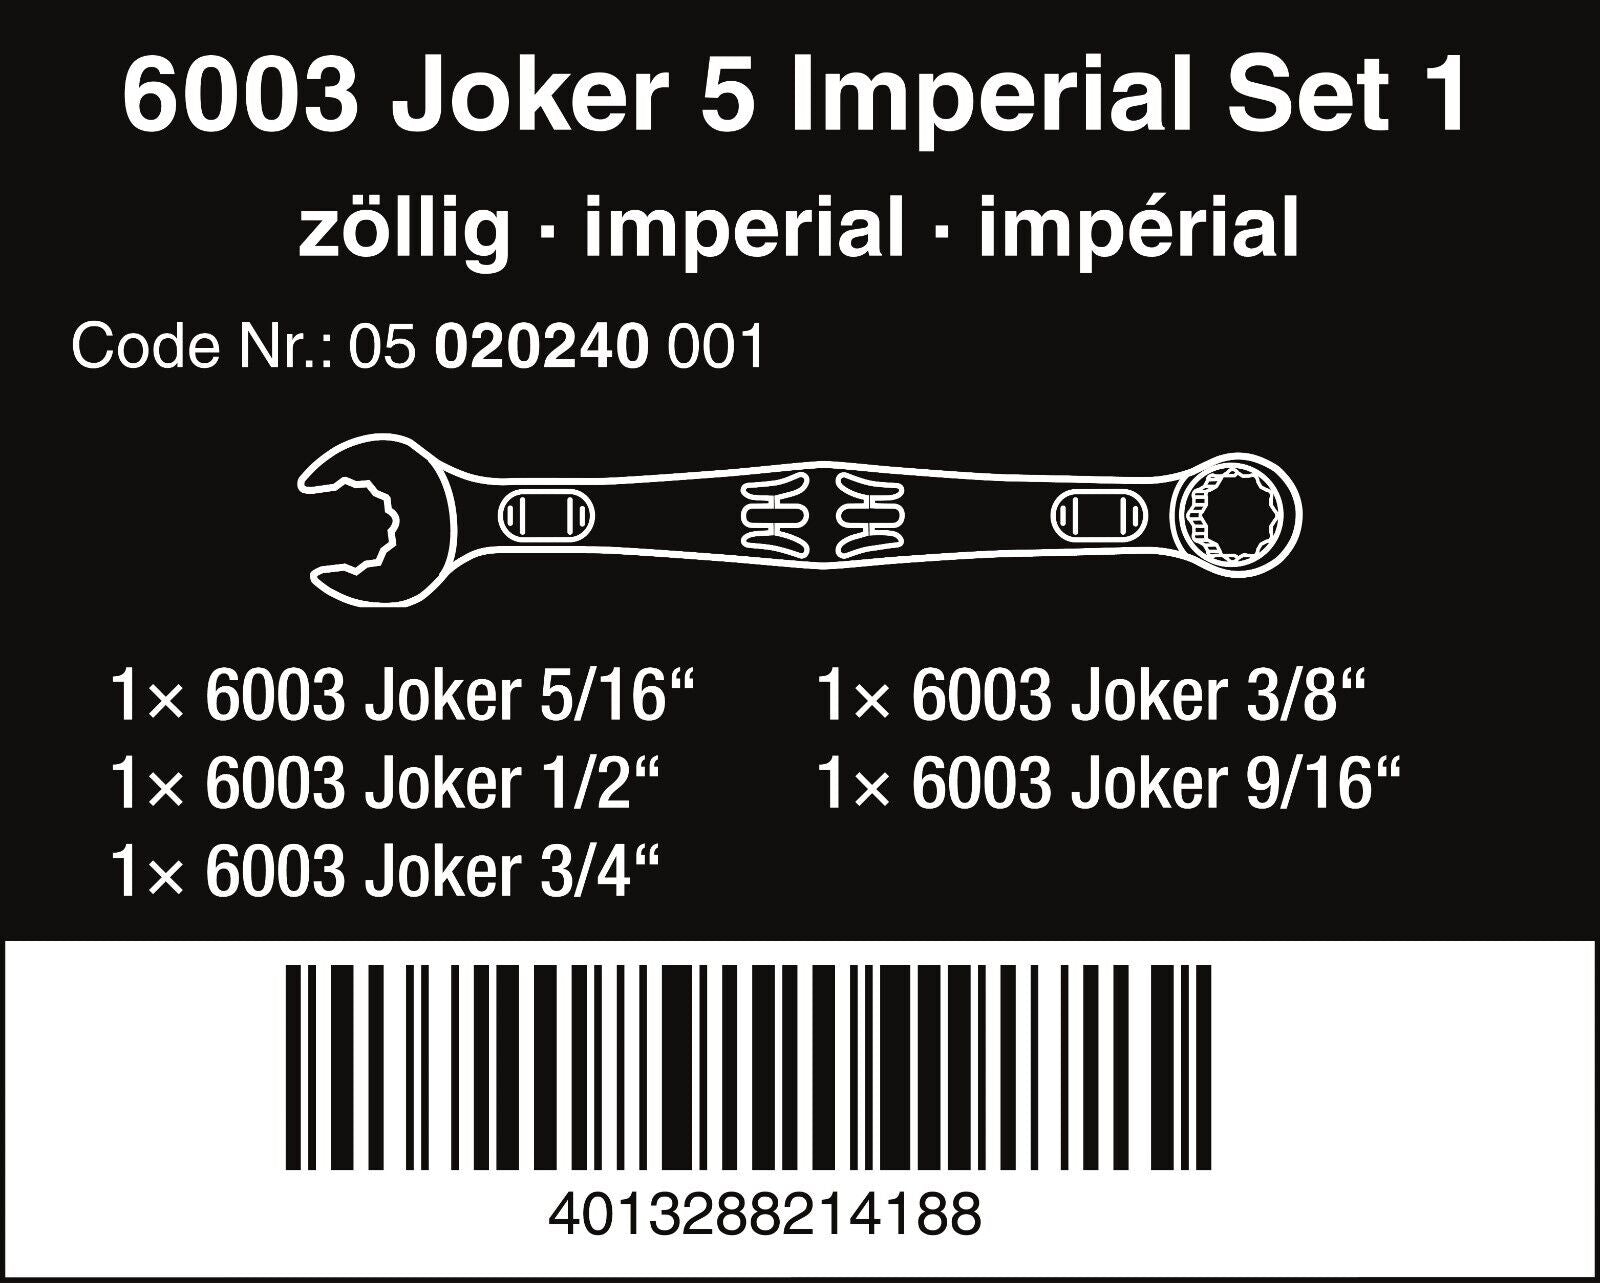 Wera 05020229001 6003 Joker 4 Imperial Set 1